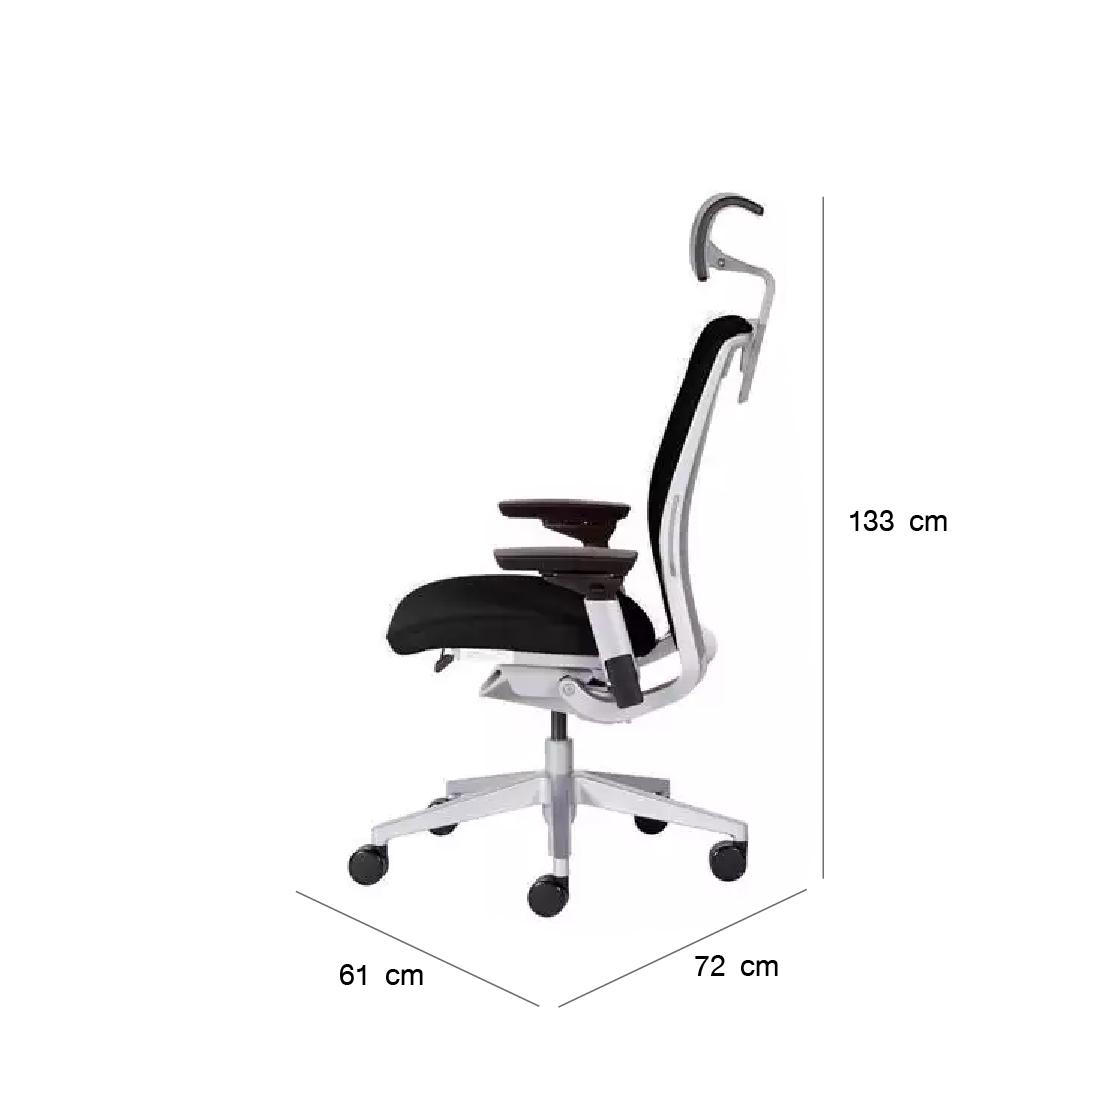 Modernform เก้าอี้ Steelcase ergonomic รุ่น Think v2 Platinum พนักพิงศรีษะหุ้มผ้าสีดำ เก้าอี้เพื่อสุขภาพ เก้าอี้ผู้บริหาร เก้าอี้สำนักงาน เก้าอี้ทำงาน